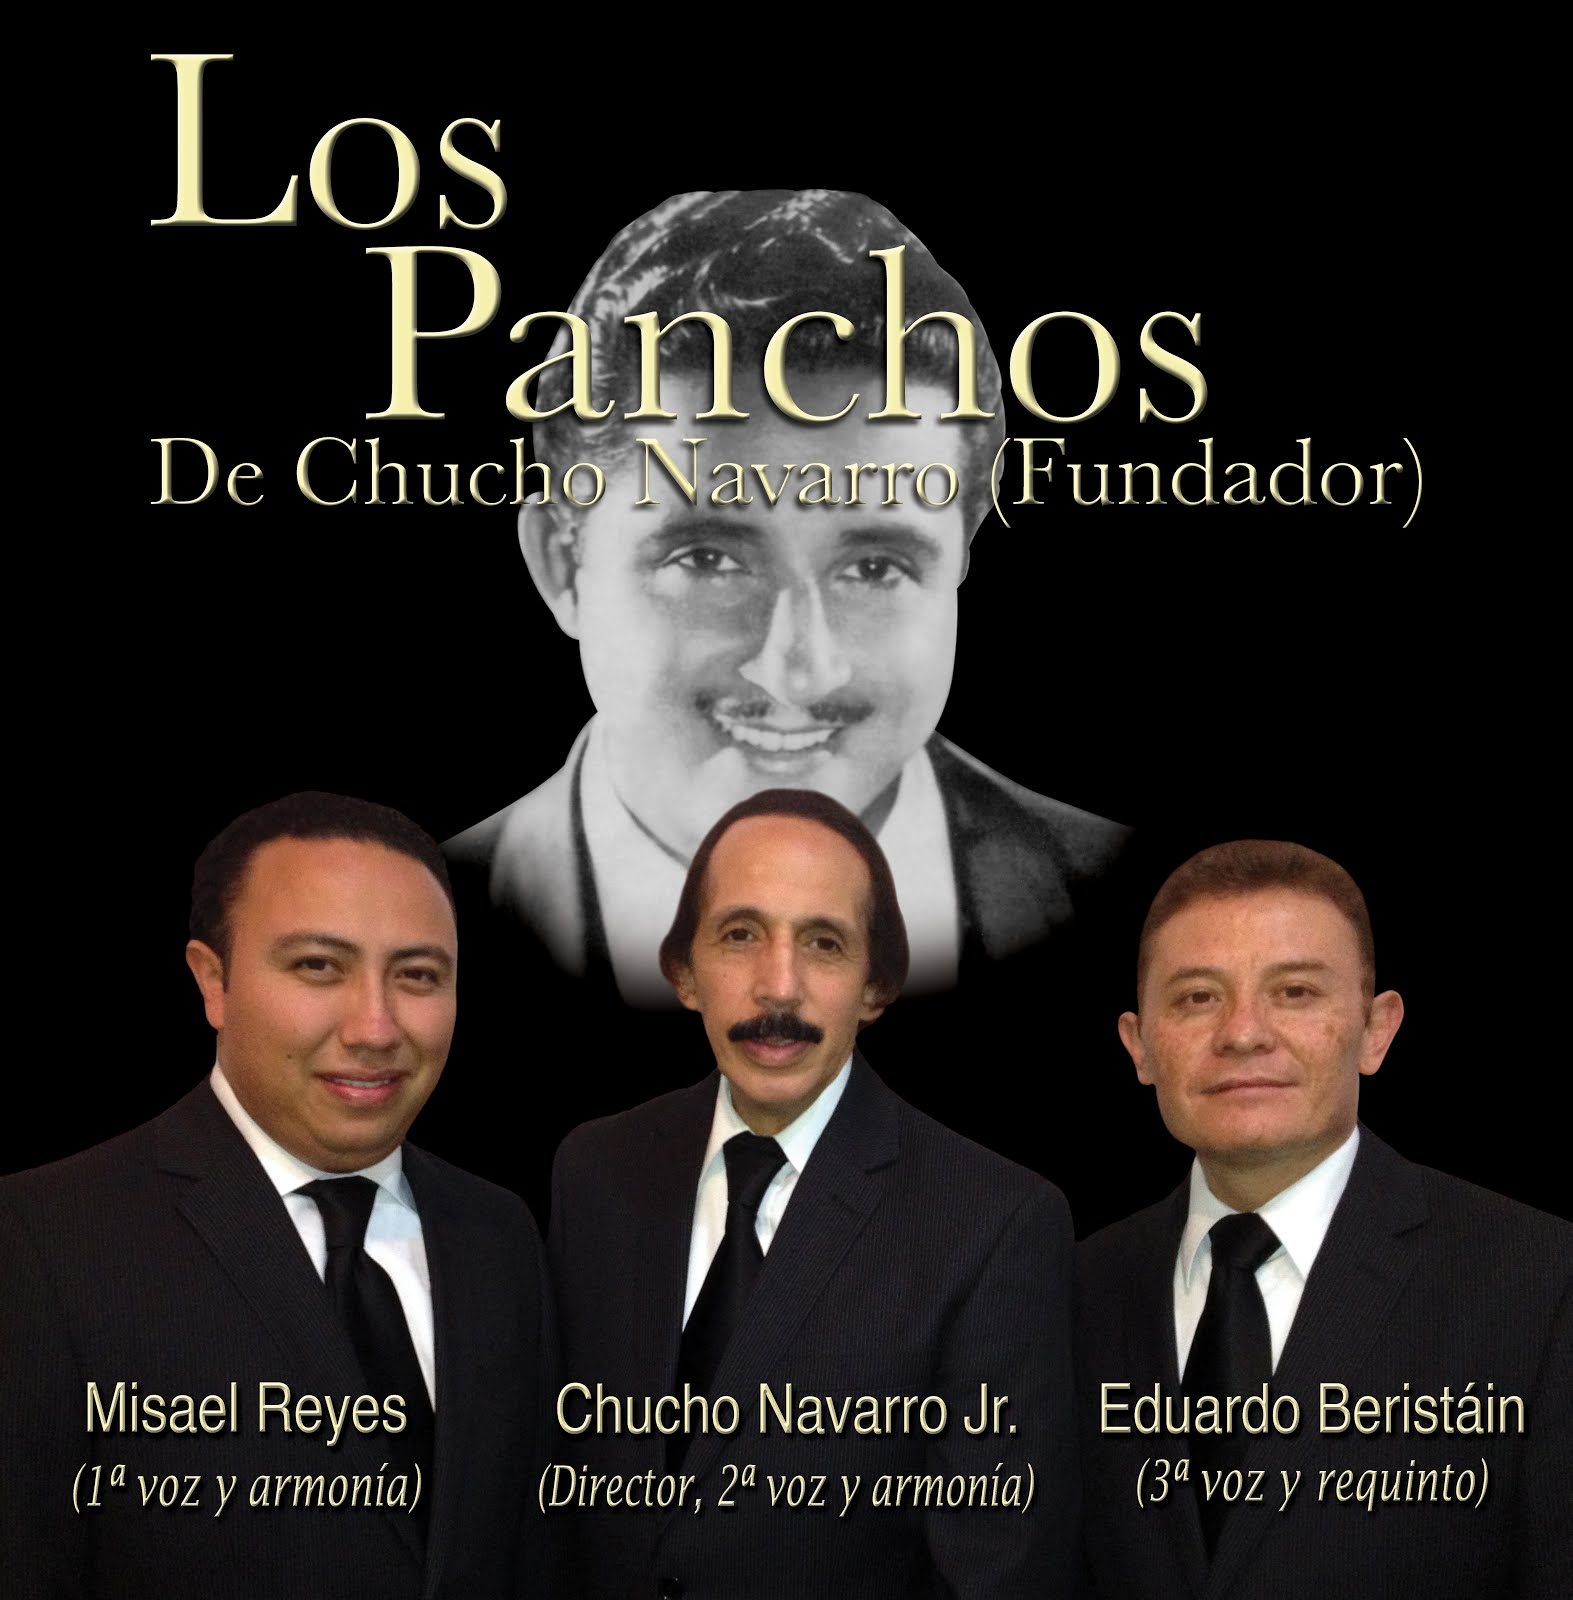 Trio Los Panchos de Chucho Navarro    fundador